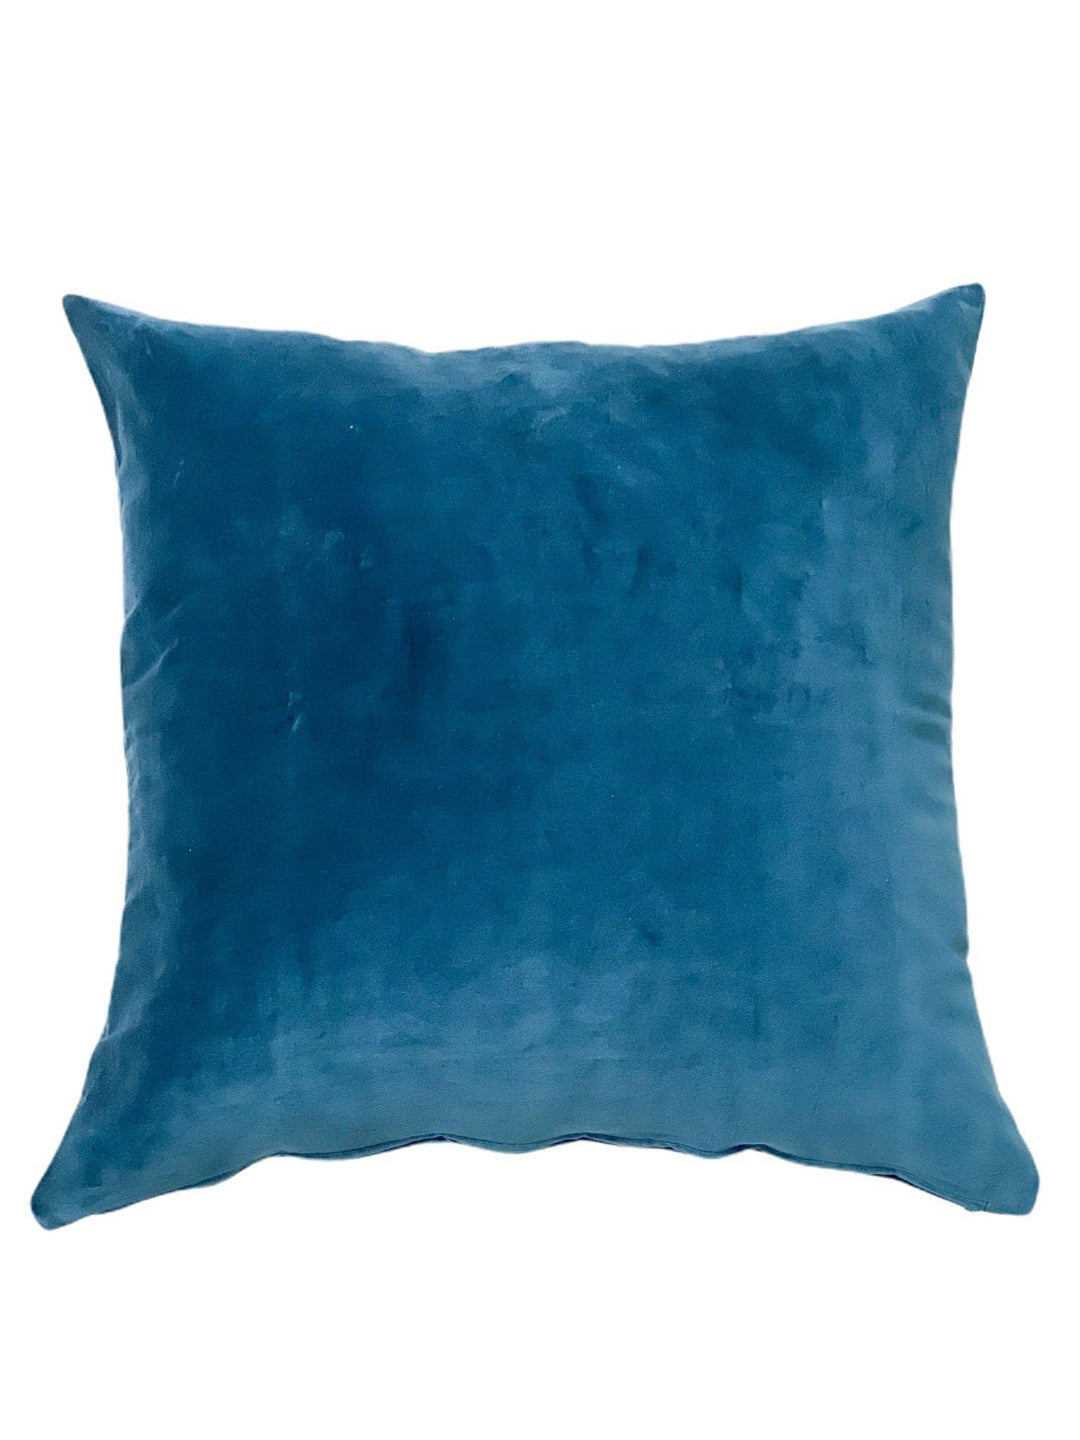 Studio S Designs - Velvet Throw Pillow 24 X 24-Royal Blue